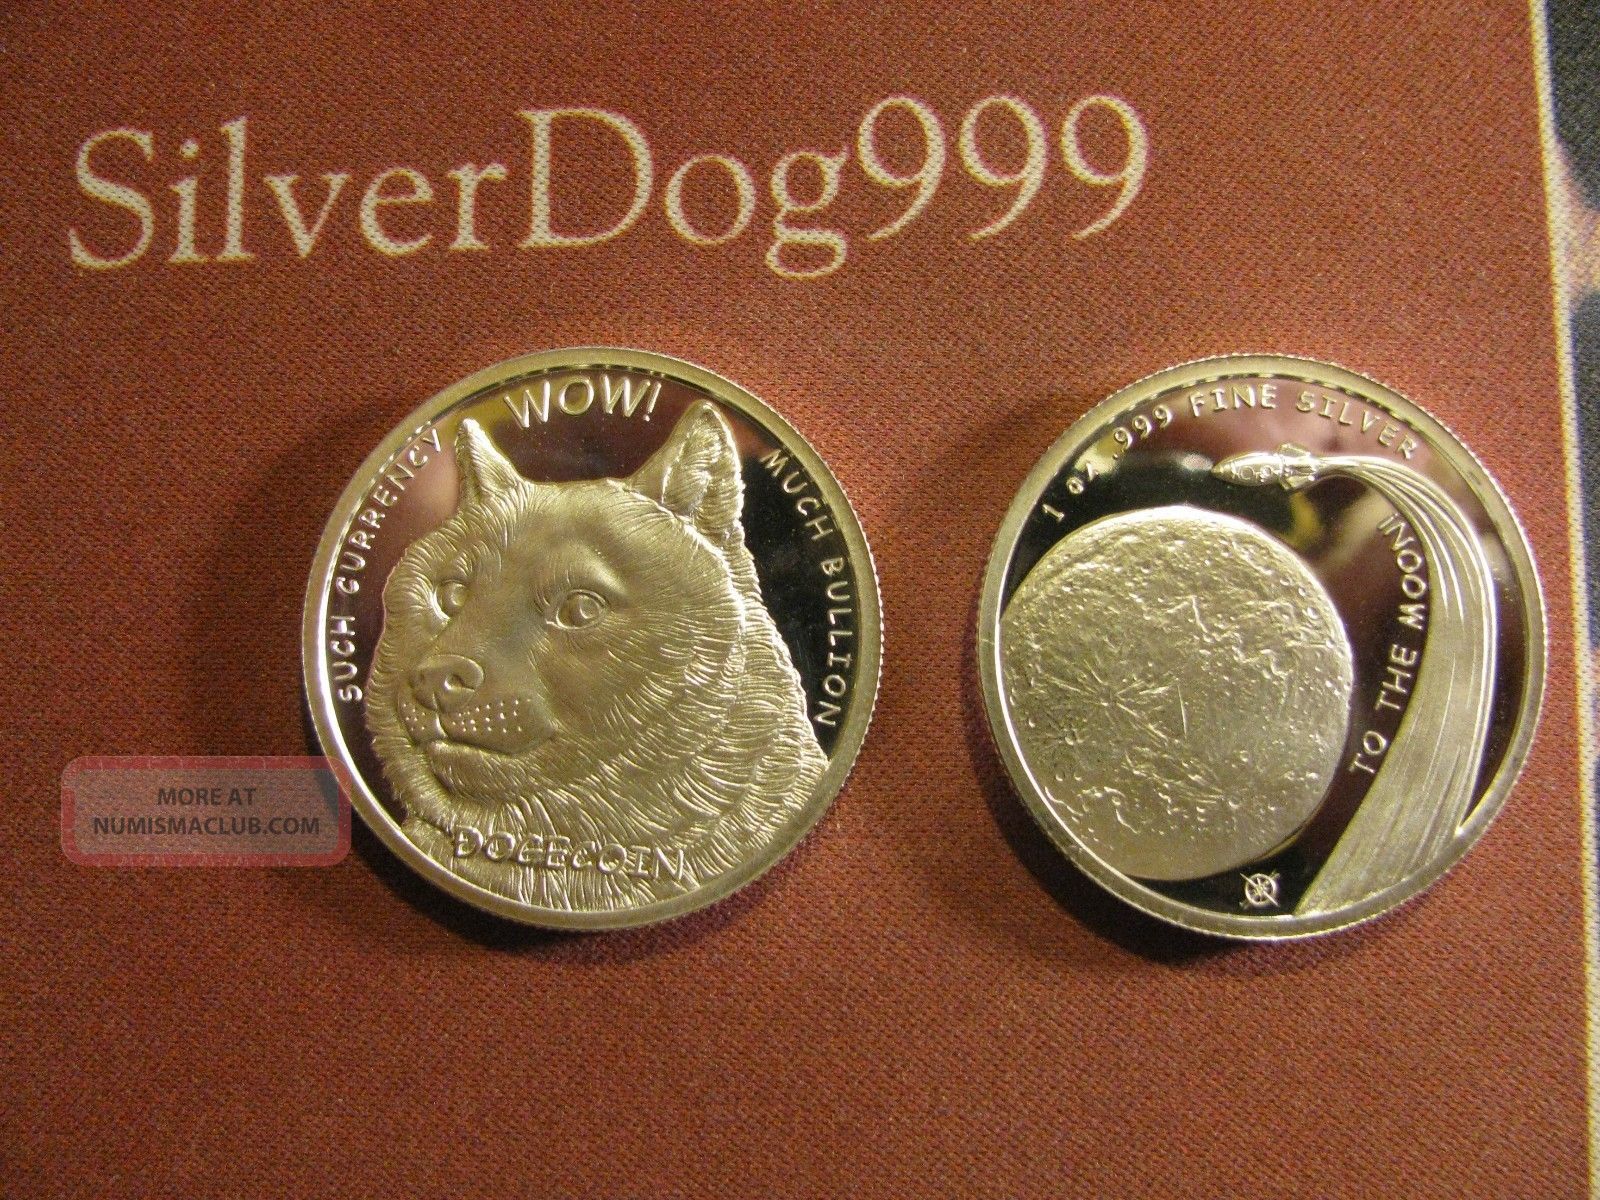 1 oz silver dogecoin medallion